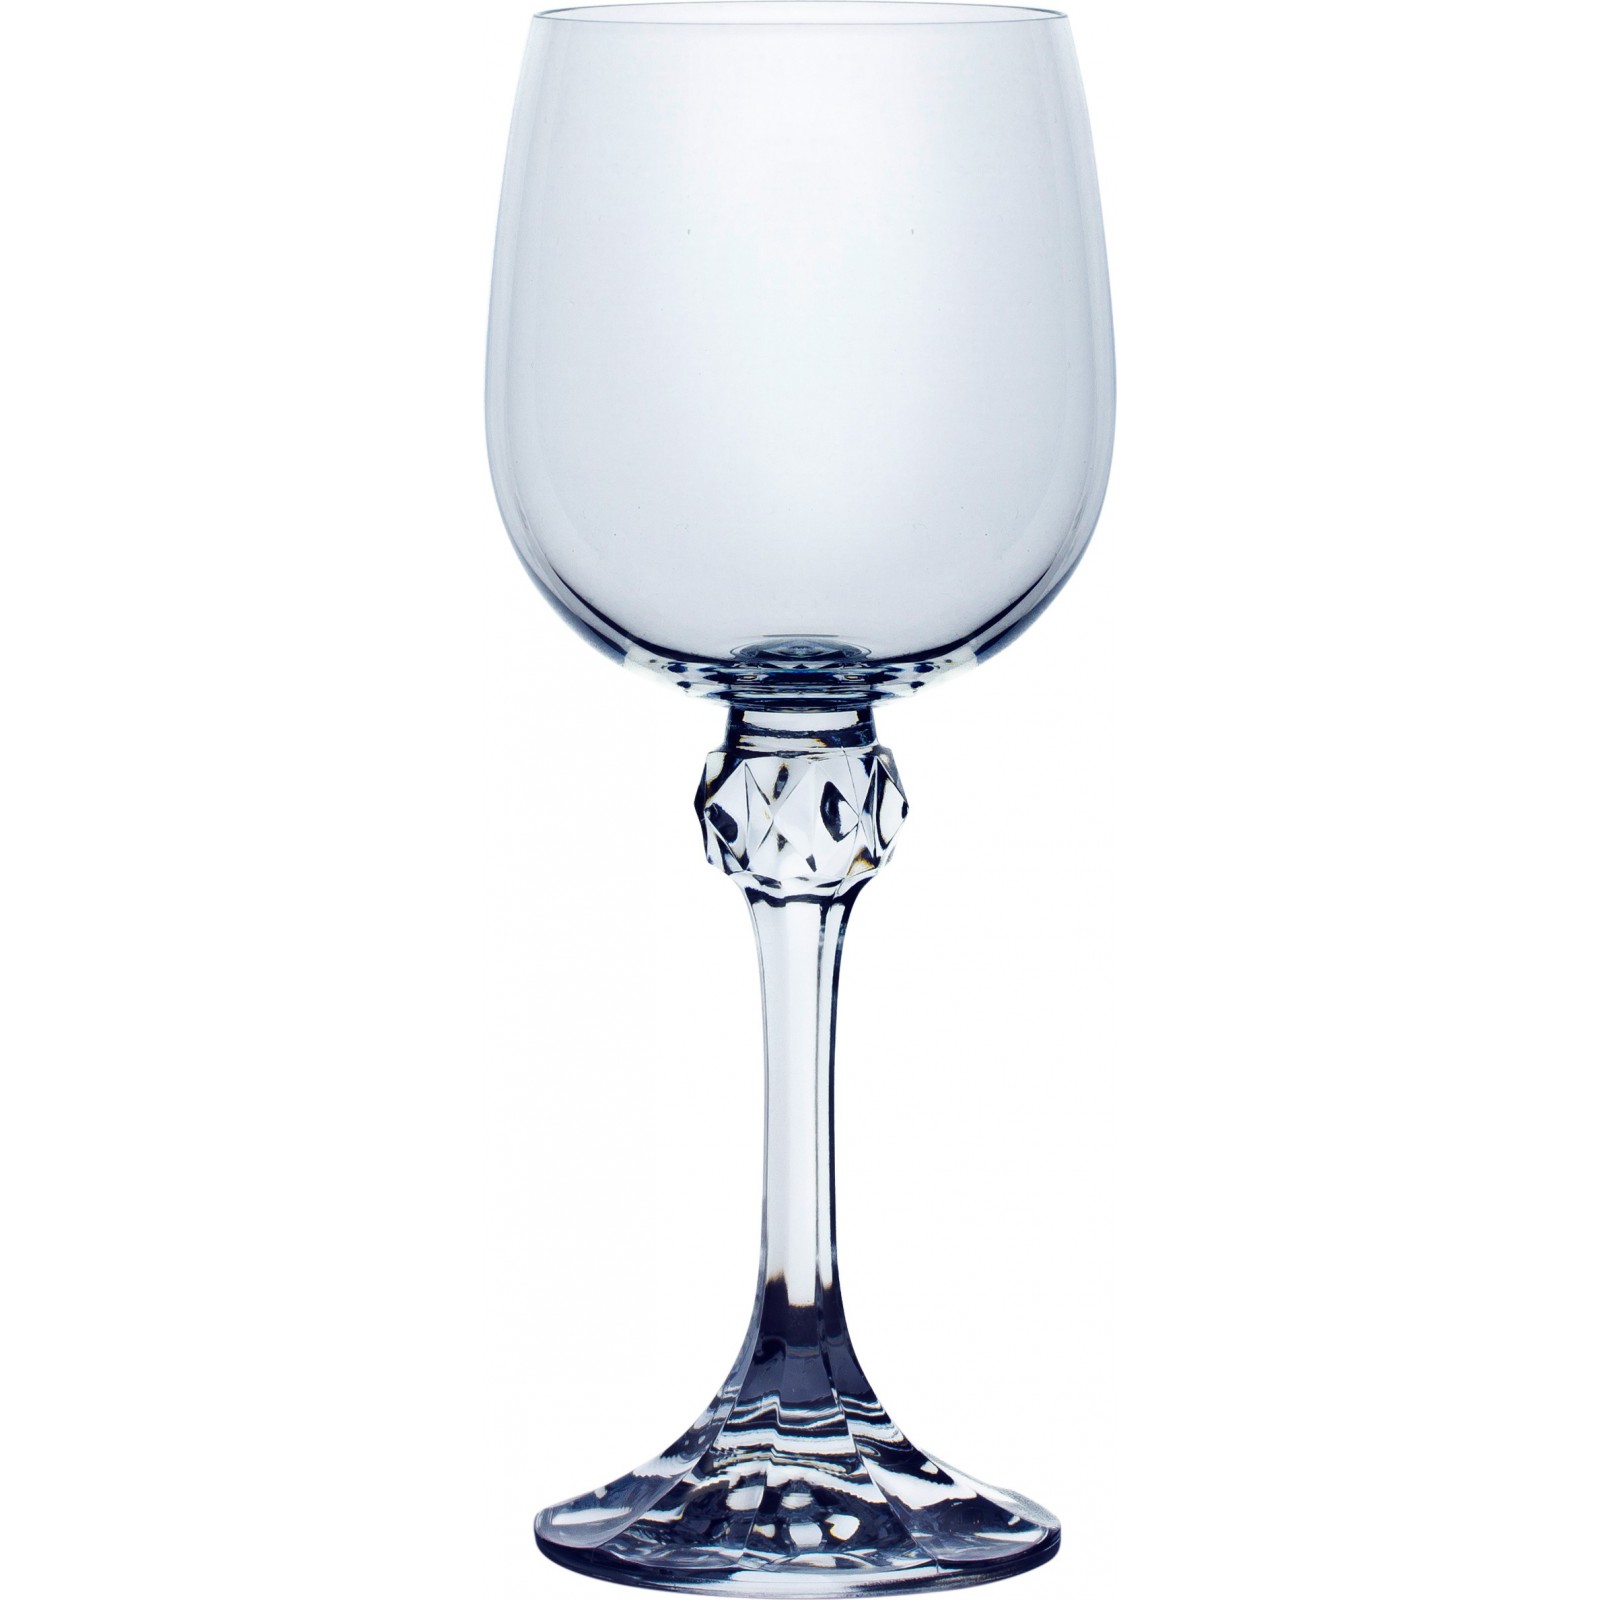 Бокал для вина 190 мл 6 шт серия Джулия стекло Crystalex Богемия Чехия арт BT01643